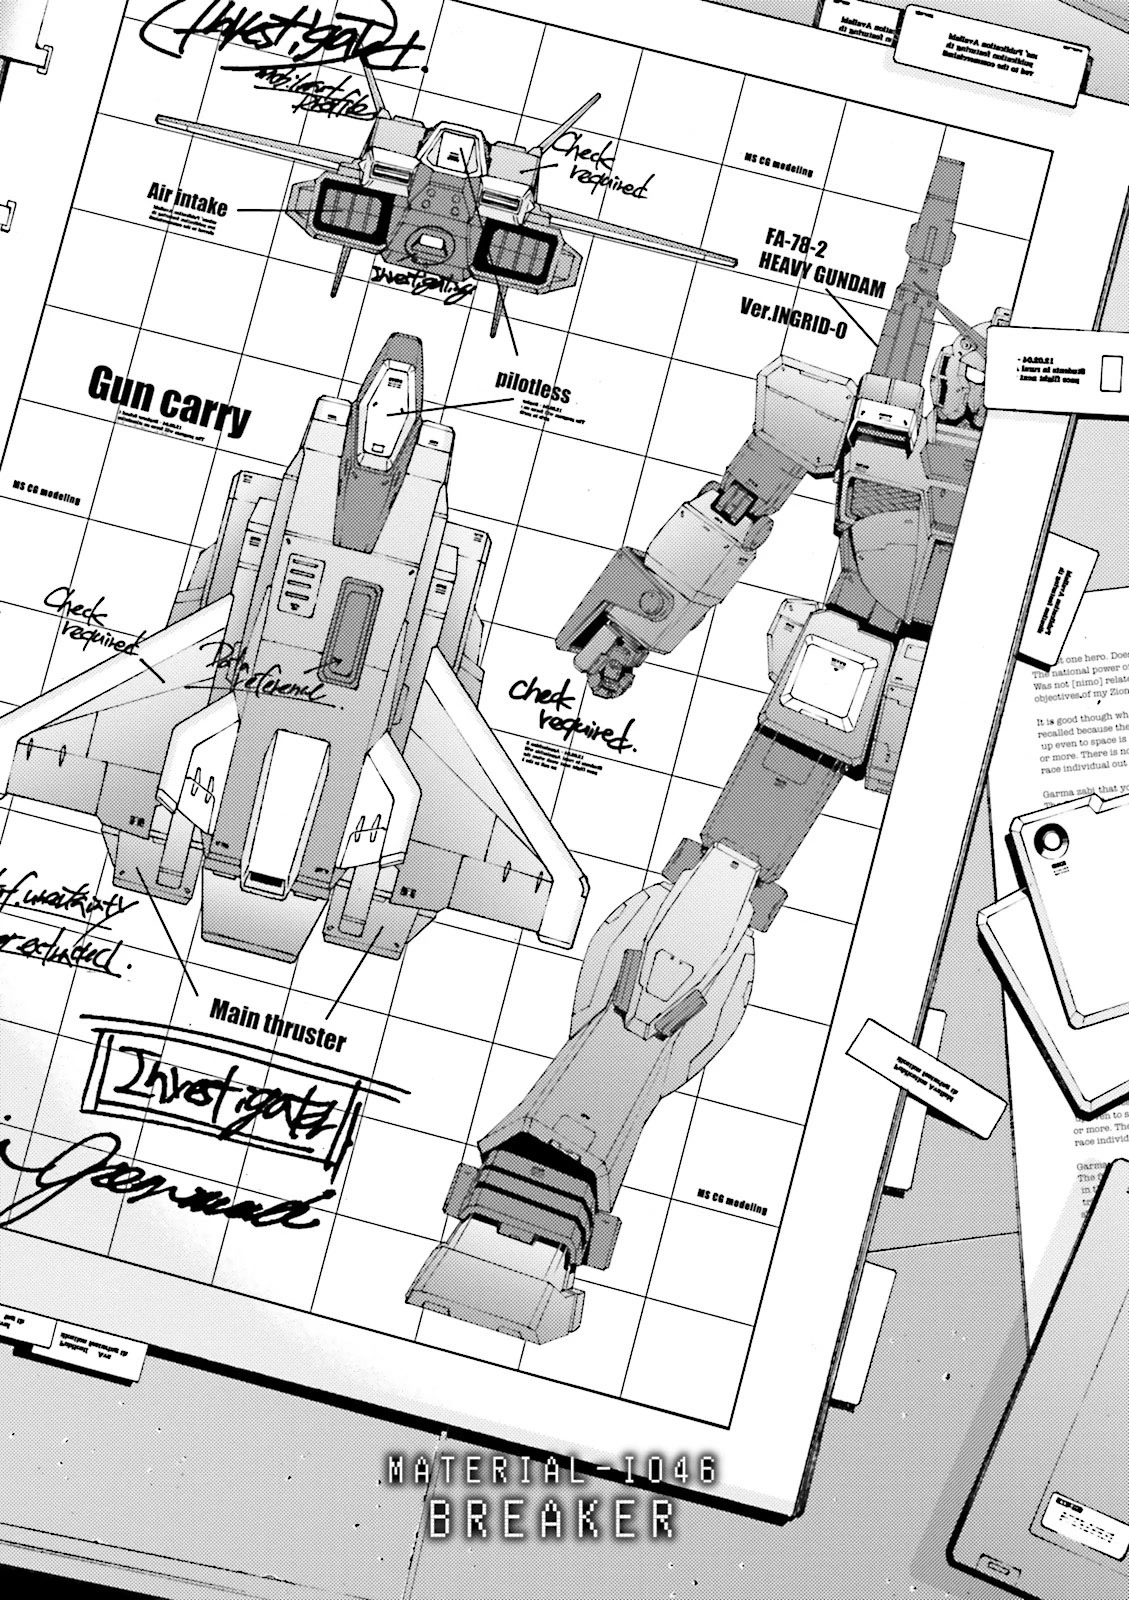 Kidou Senshi Gundam Msv-R: Johnny Ridden No Kikan - Page 1